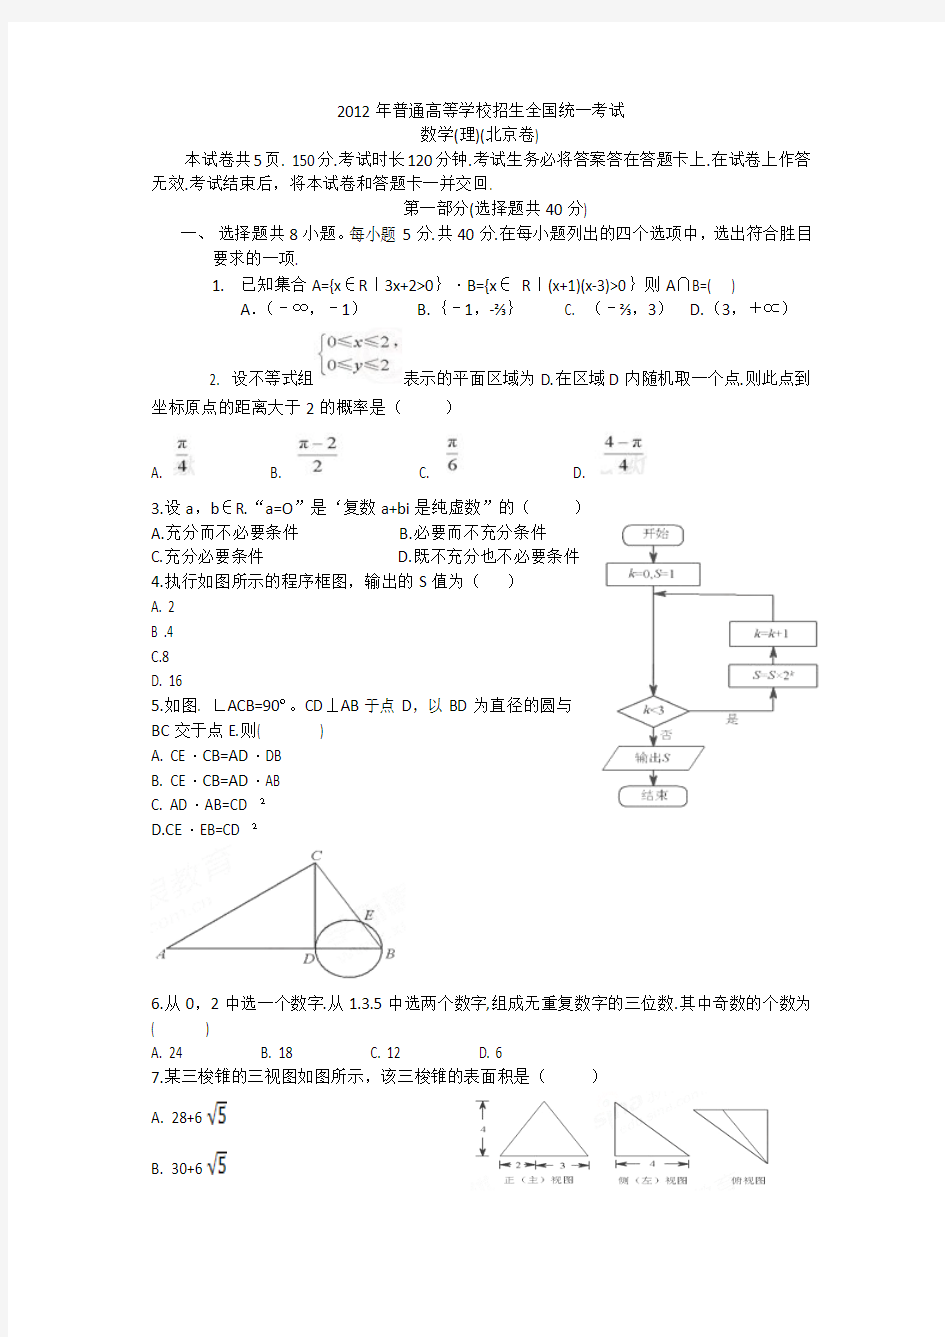 2012高考试题(北京)理科数学